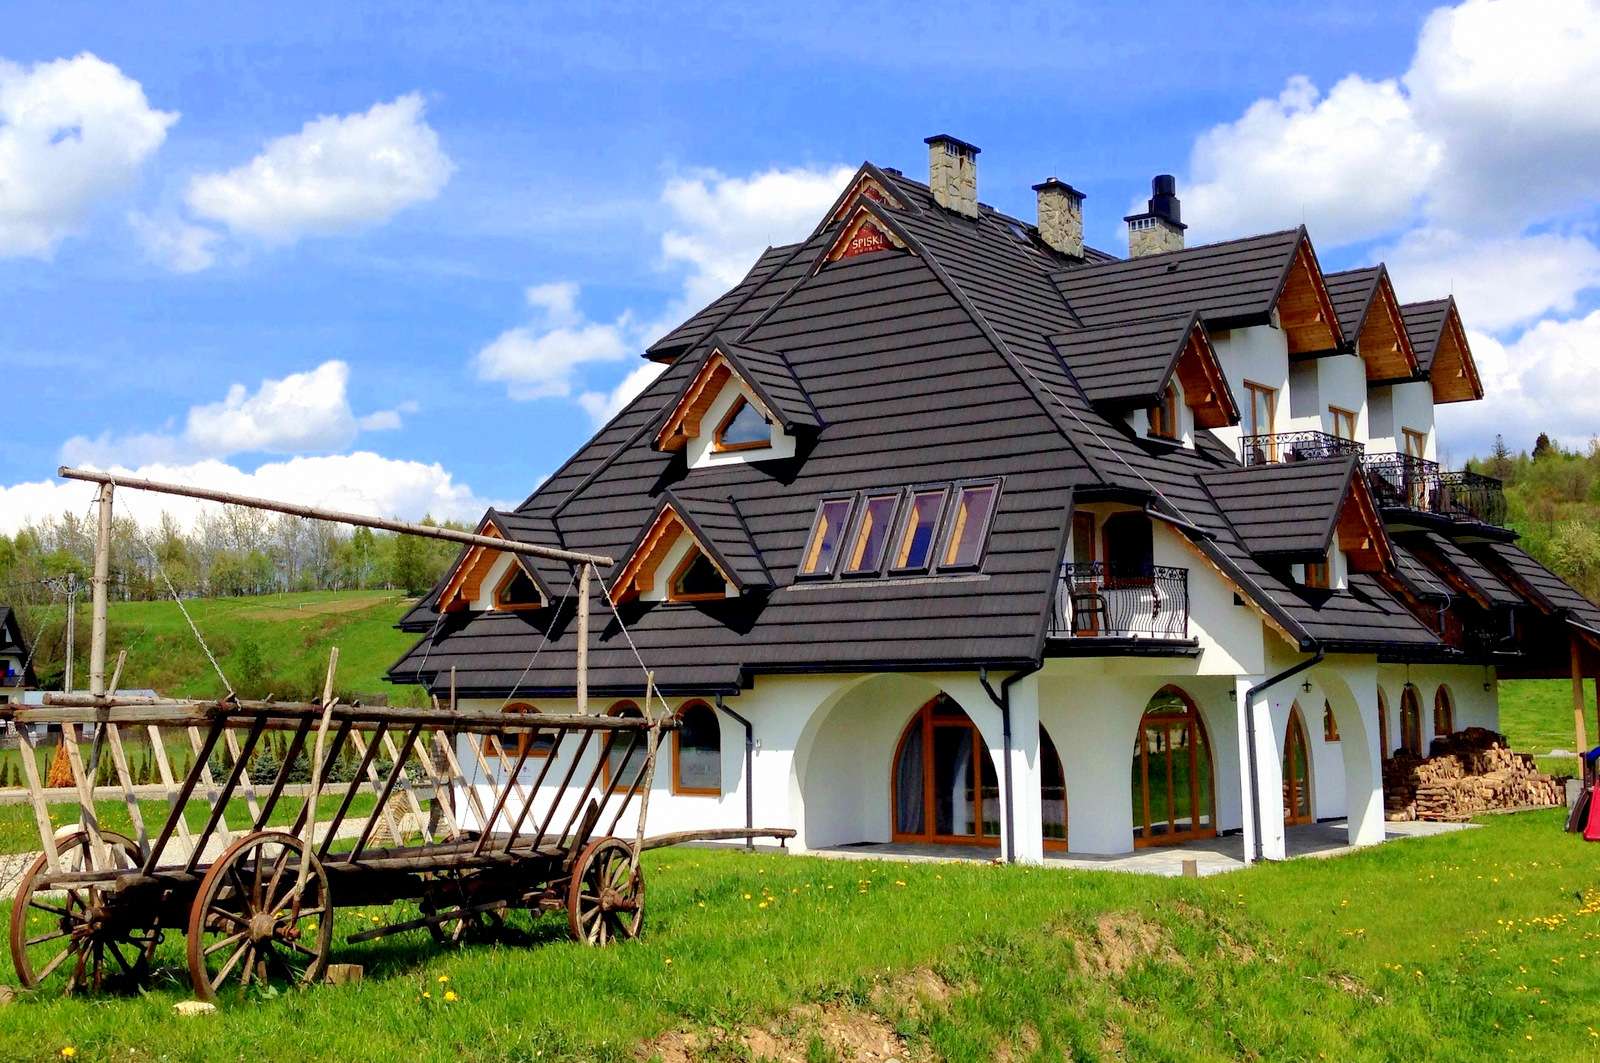 Huis in het dorp Jurgów (Tatragebergte, Polen) online puzzel